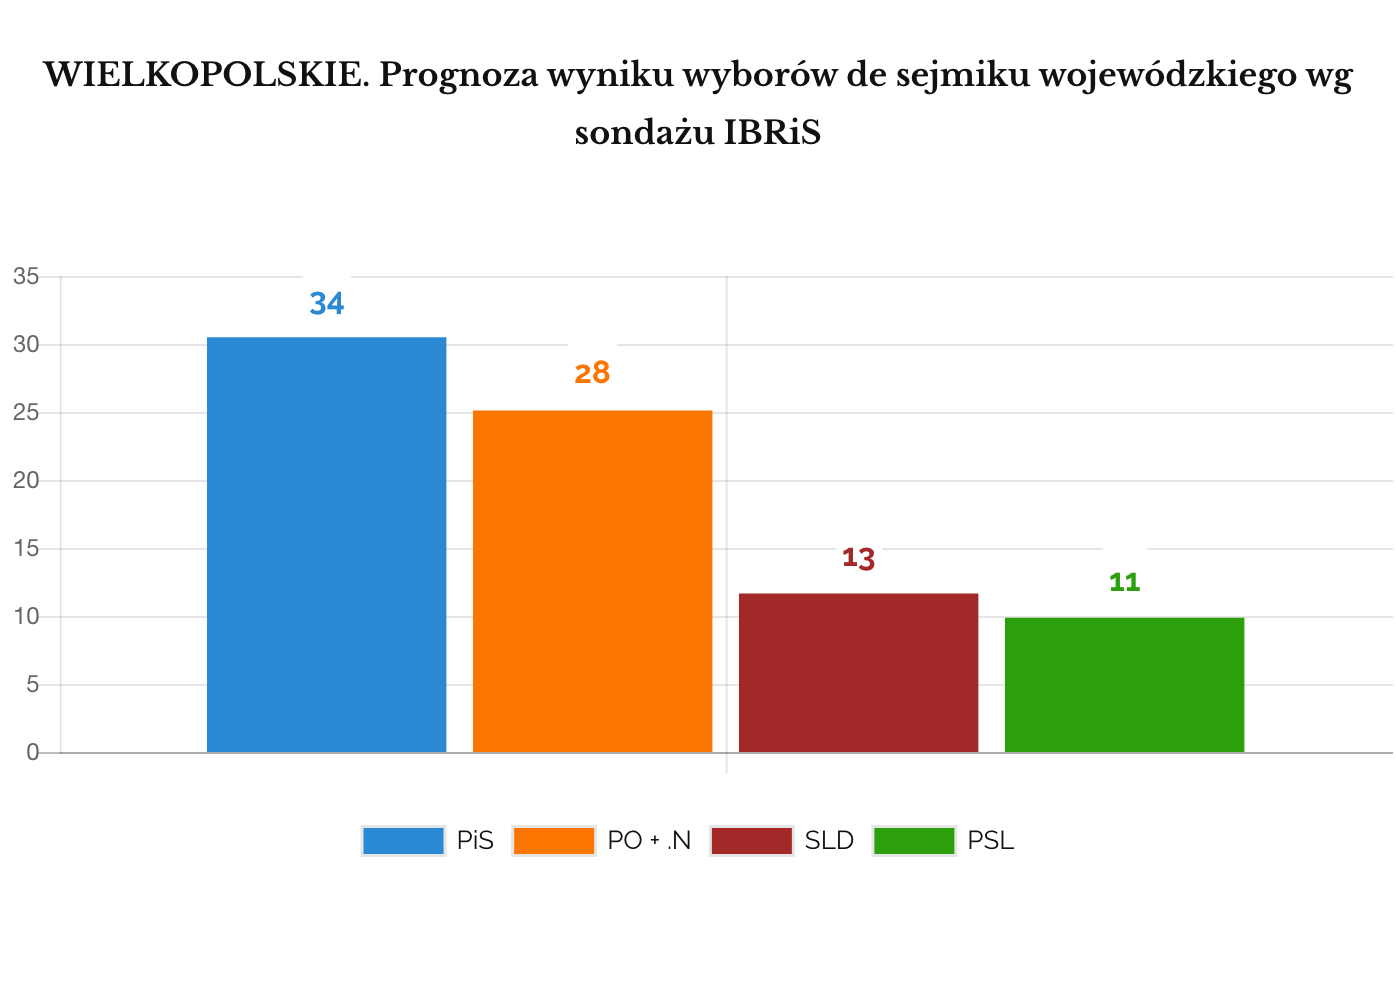 IBRIS Prognoza wyniku wyborów do sejmików wojewódzkich. WIELKOPOLSKIE